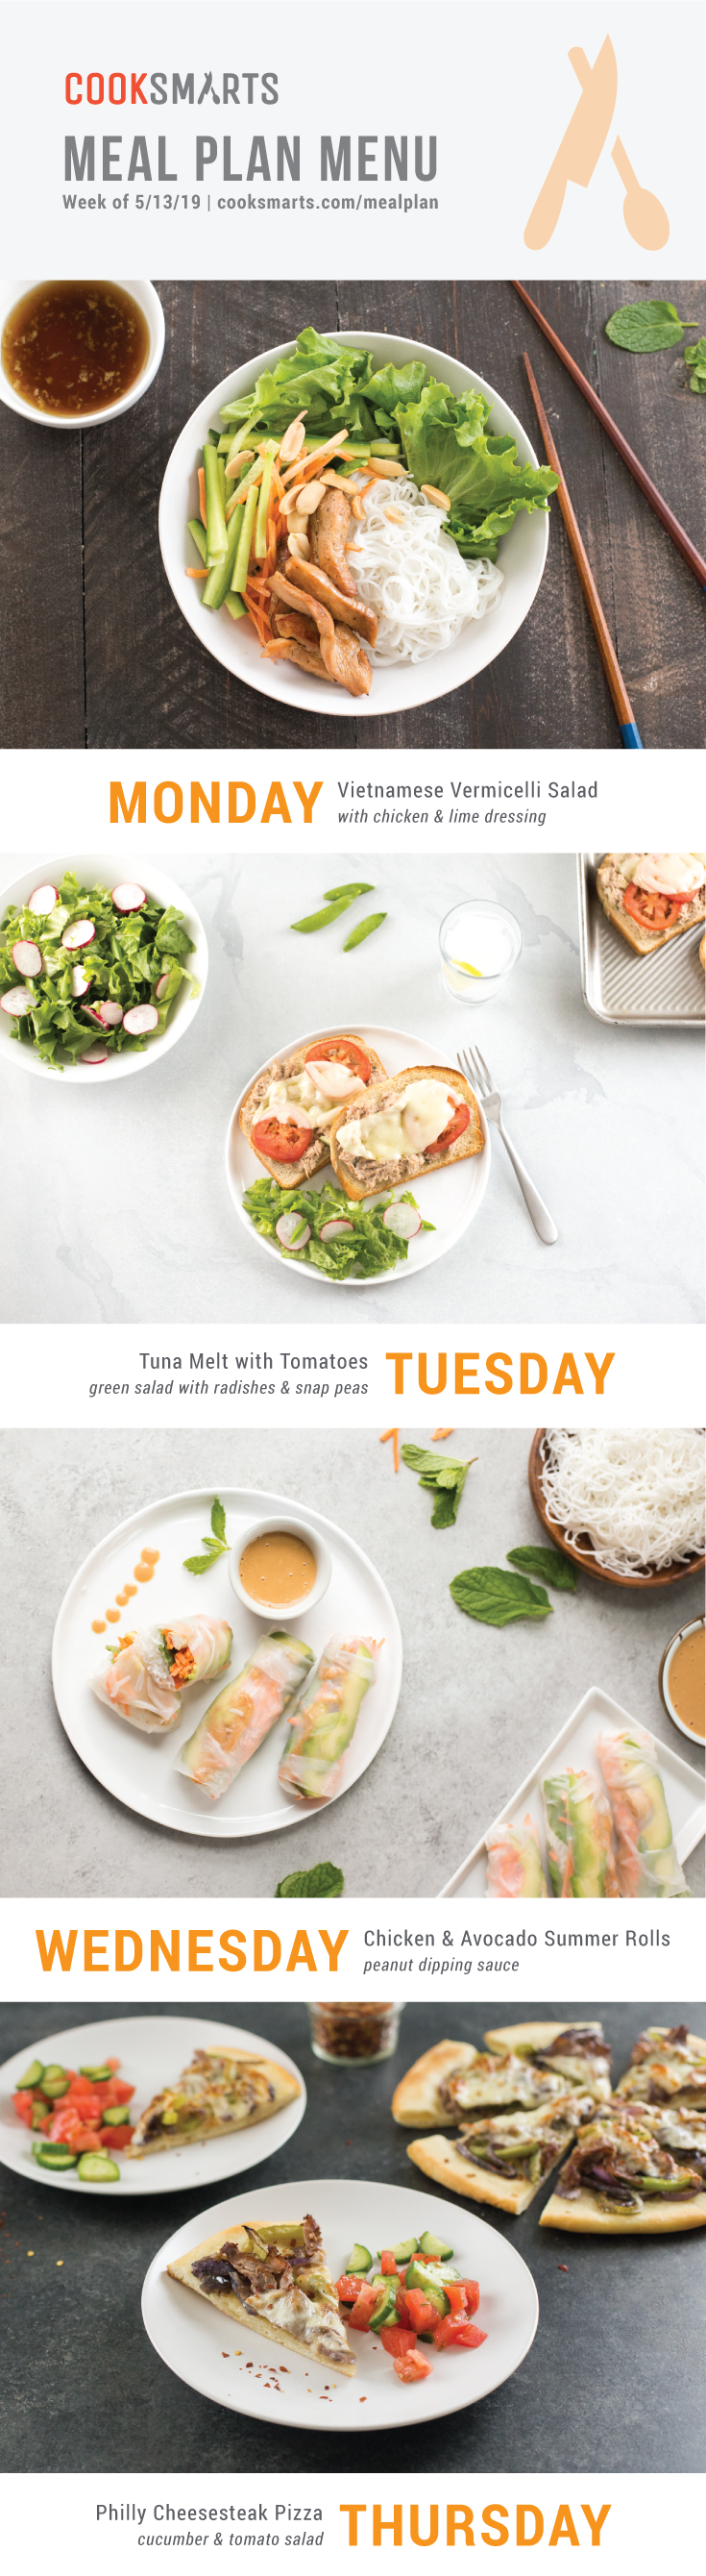 Weekly Meal Planner | Menu for Week of 5/13/19 via Cook Smarts